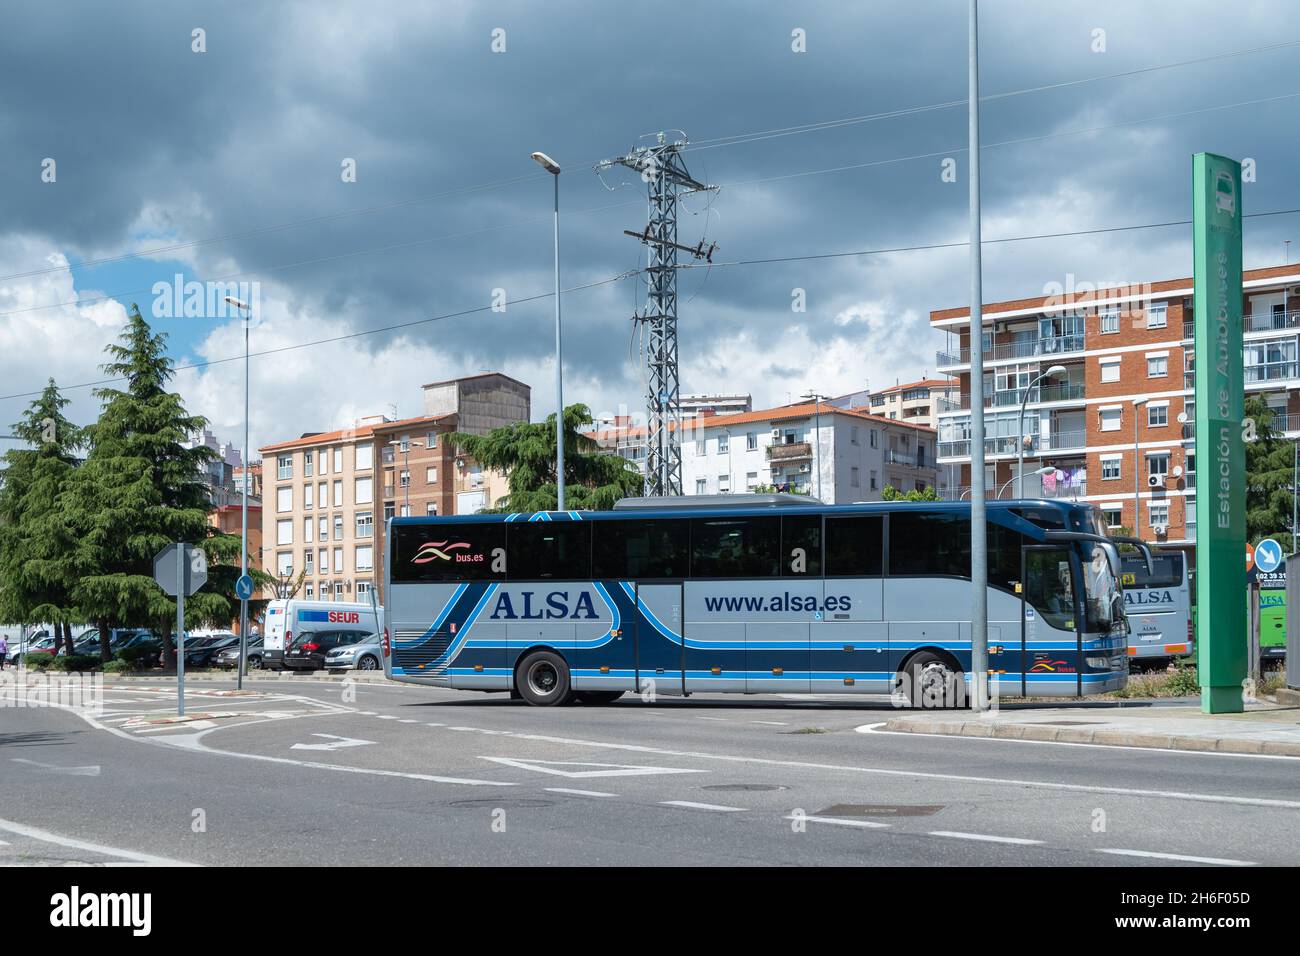 Alsa bus immagini e fotografie stock ad alta risoluzione - Alamy